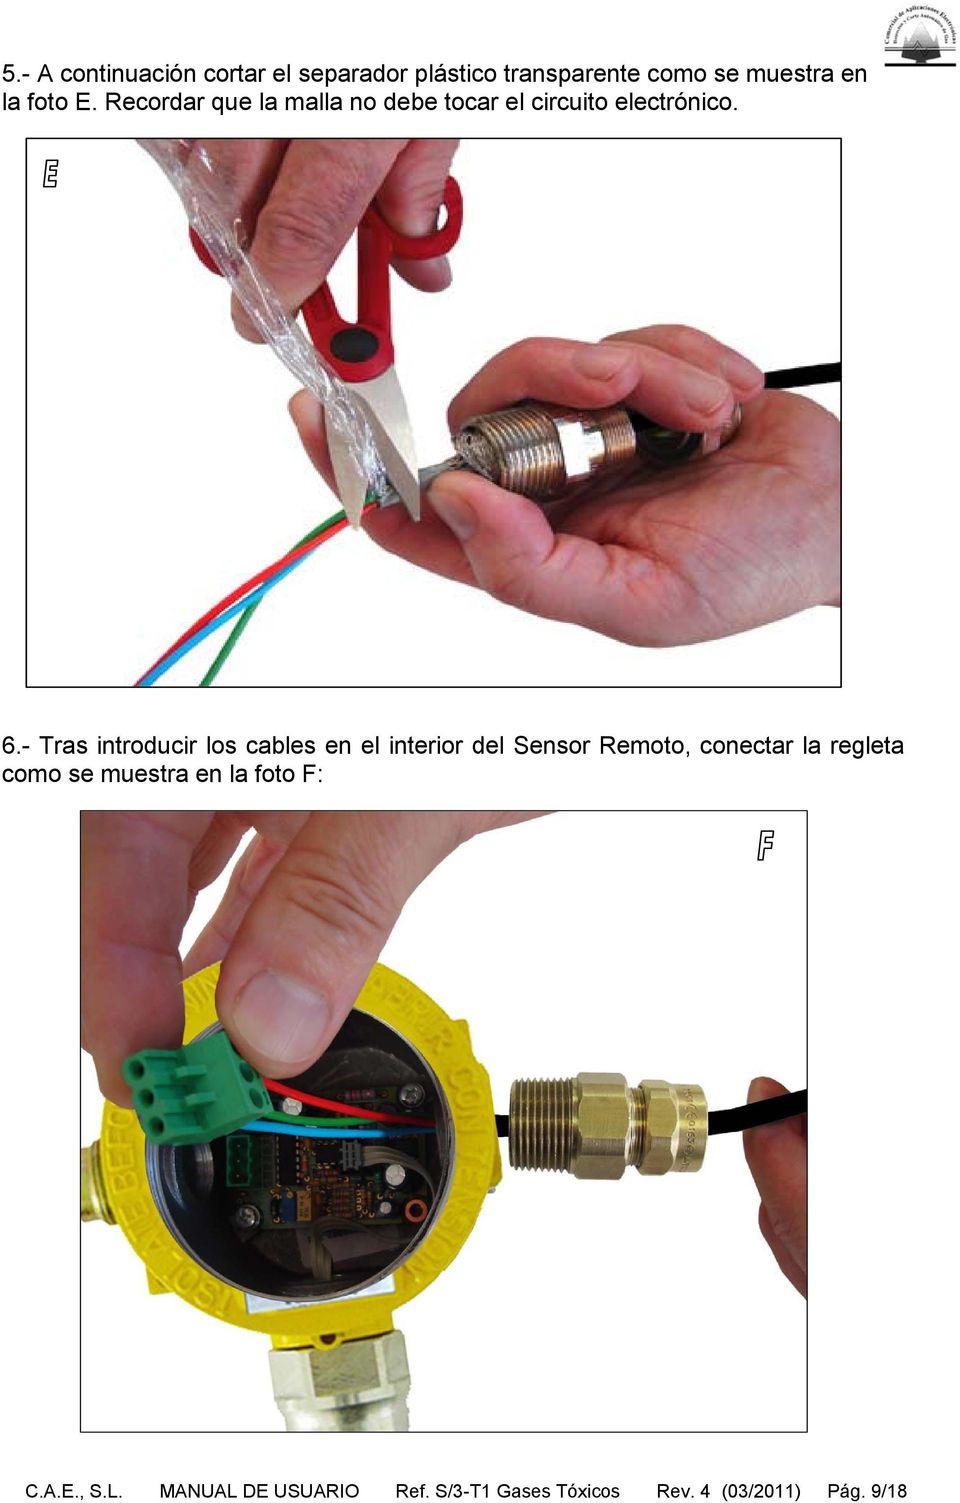 - Tras introducir los cables en el interior del Sensor Remoto, conectar la regleta como